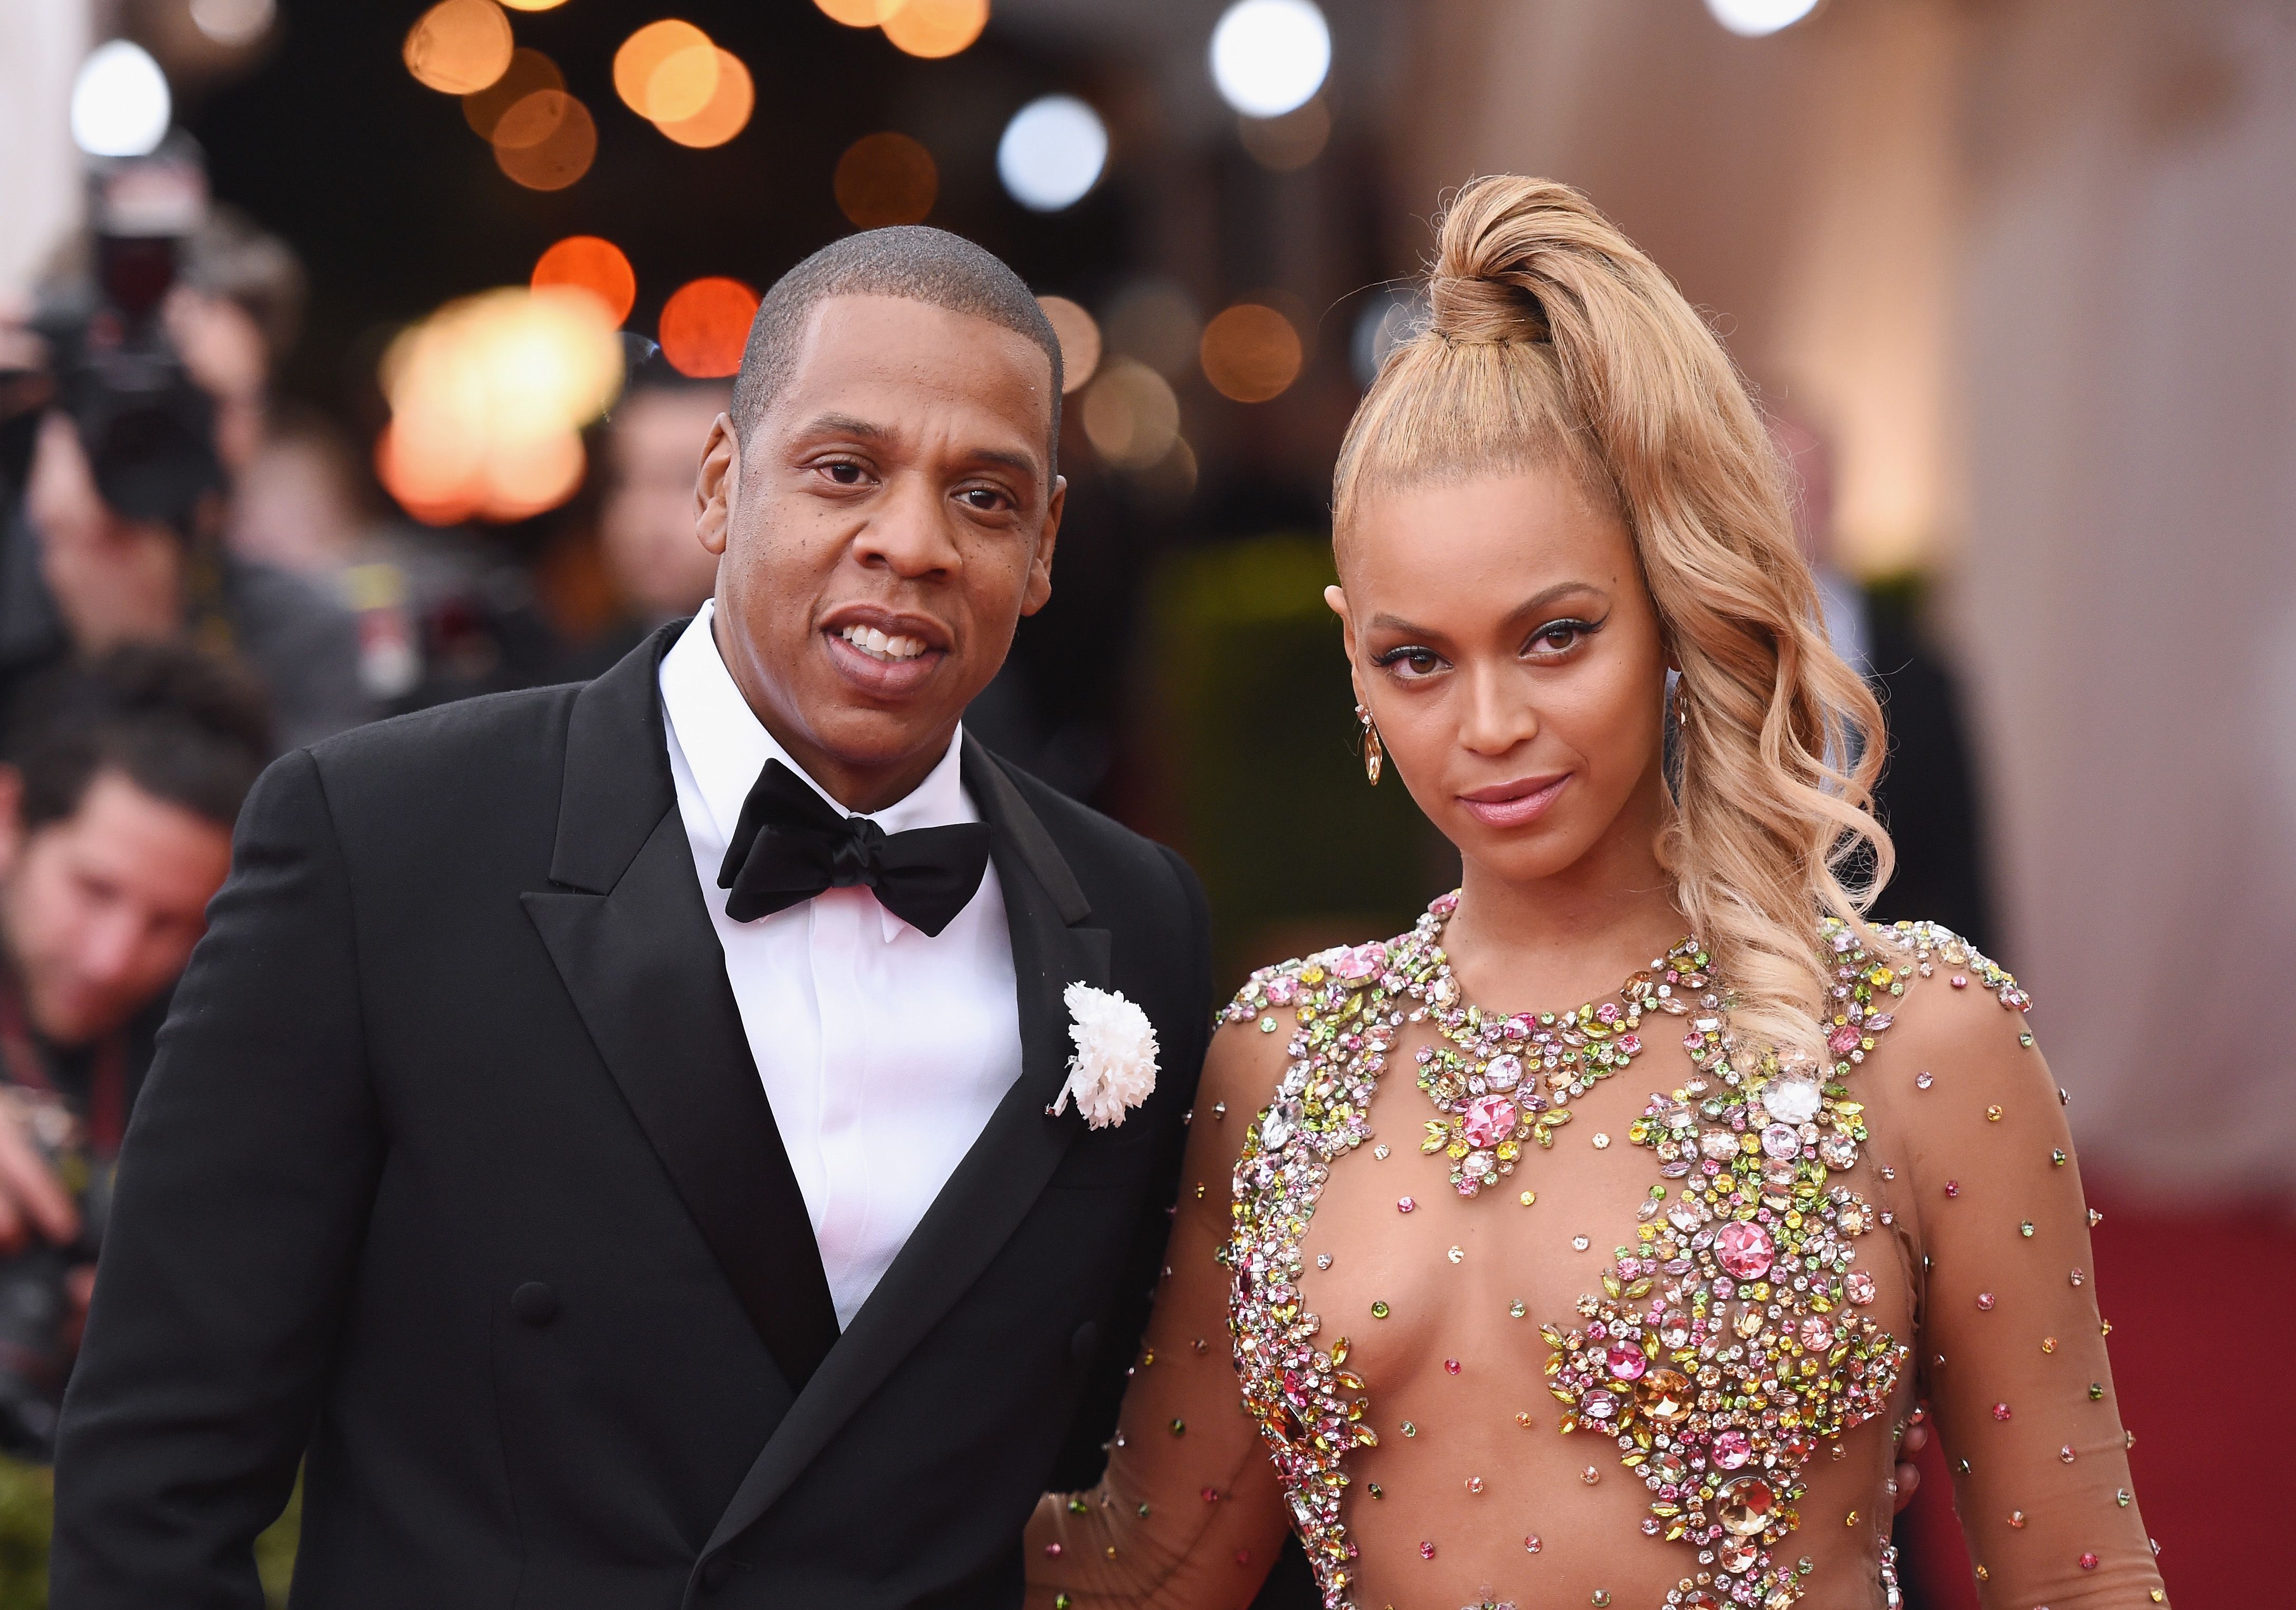 Jay Z y Beyoncé inspiraron el símbolo de 'poder blanco', afirma una figura alternativa a la derecha